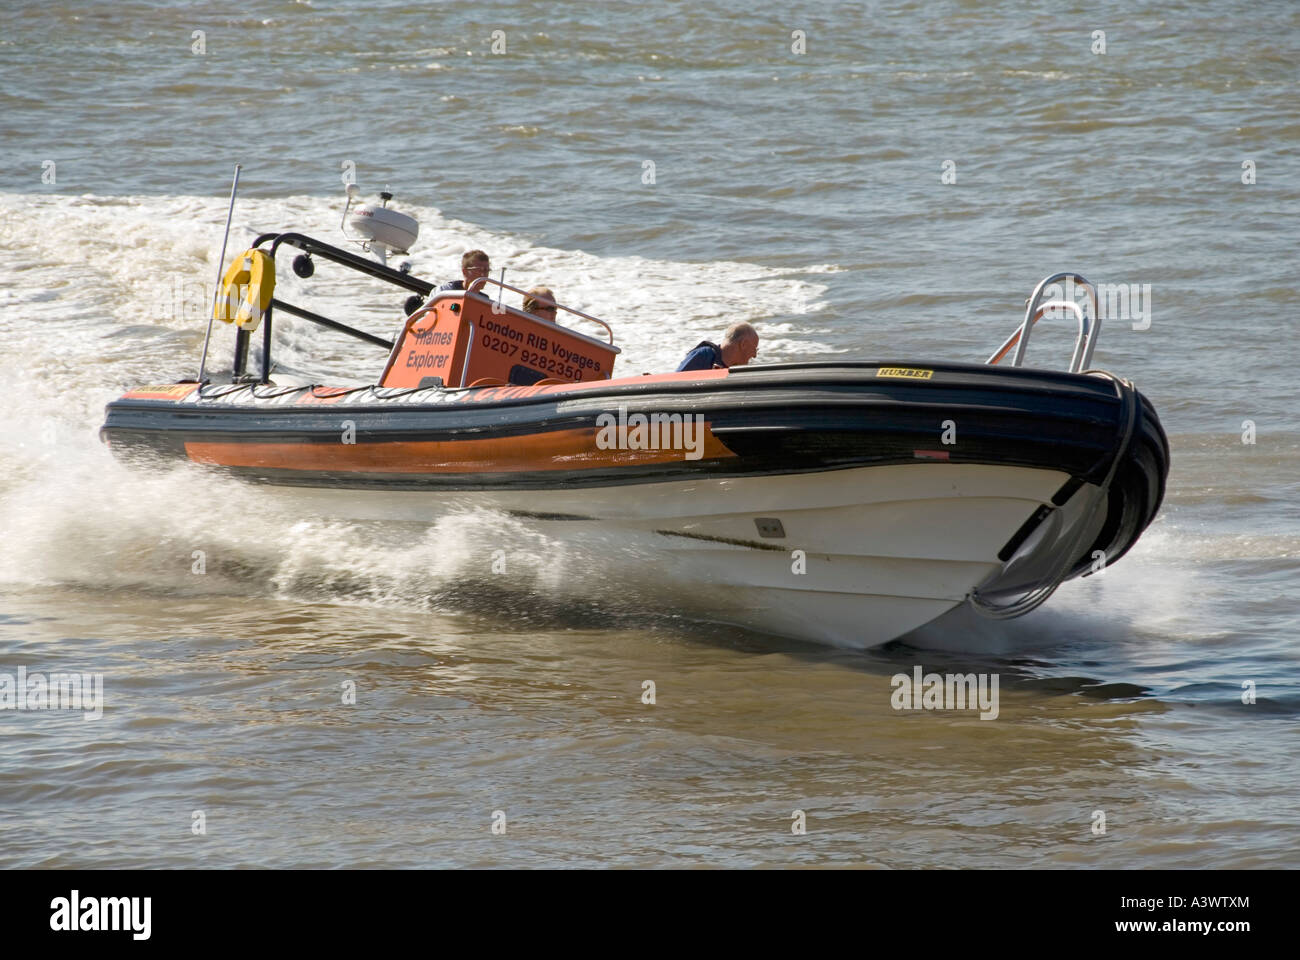 Il fiume Tamigi power boat basato sulla costruzione gonfiabile effettua manovre ad alta velocità nelle vicinanze del Canary Wharf Foto Stock